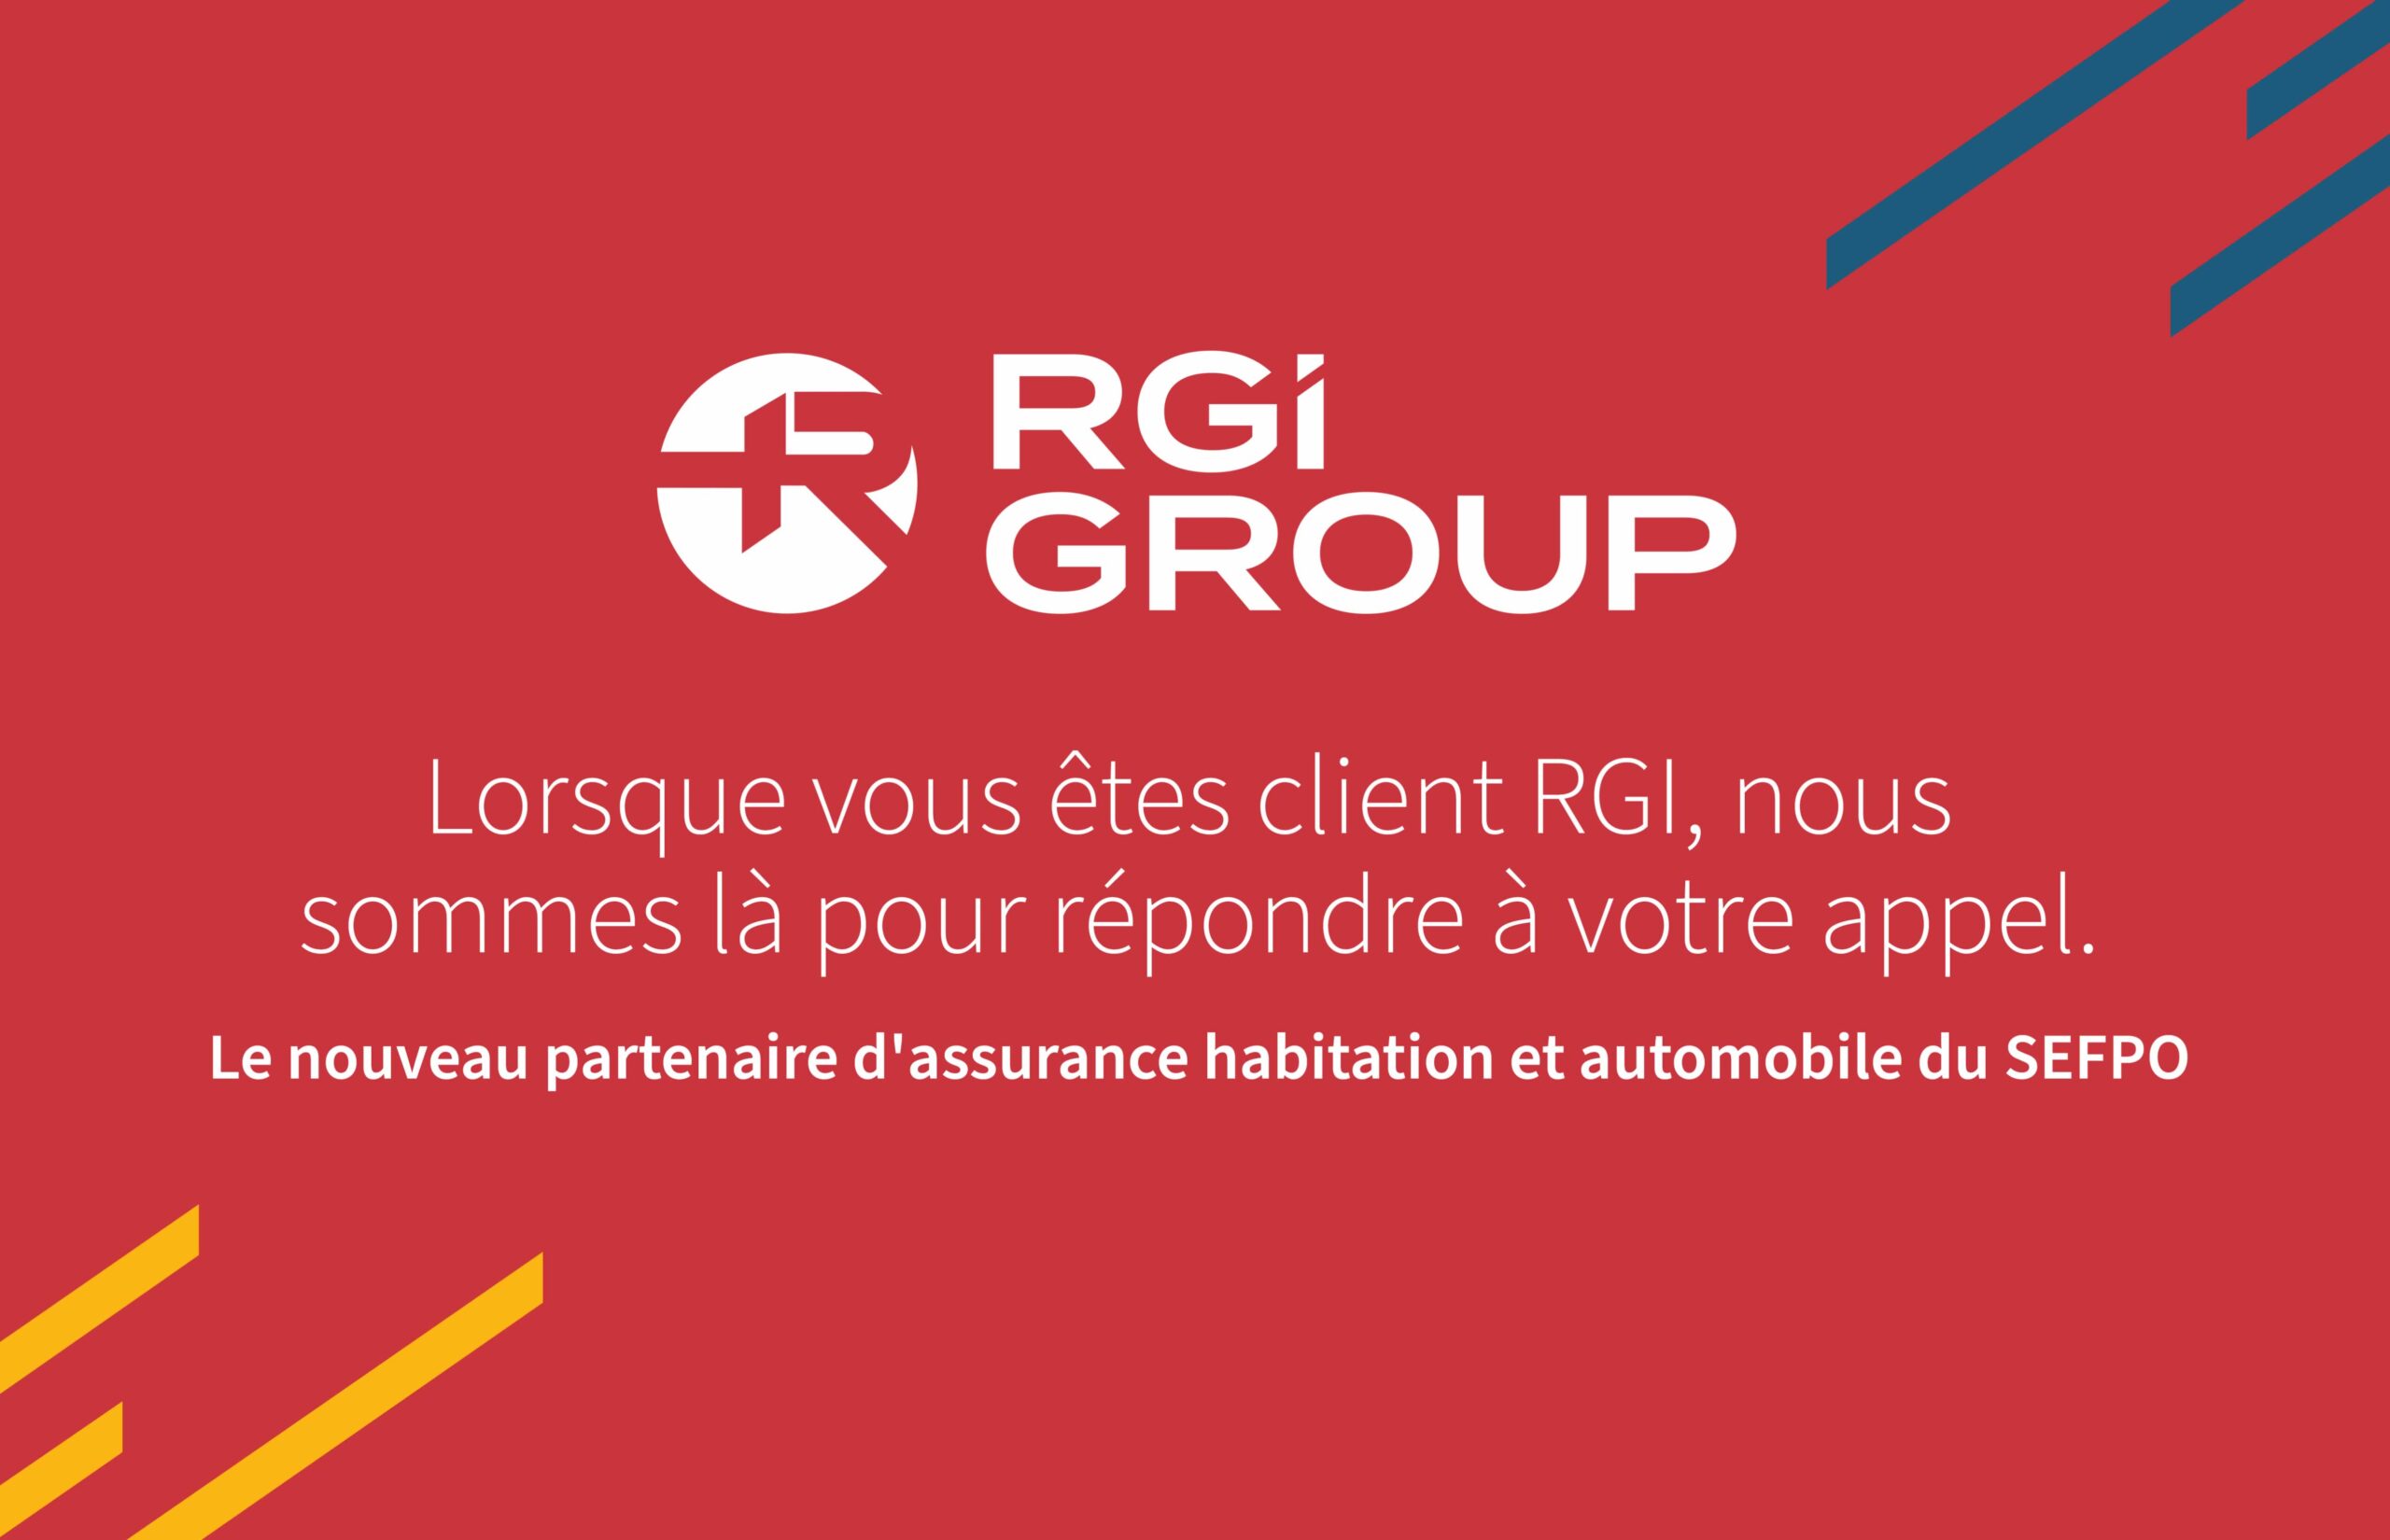 RGi Group. Lorsque vous etes client RGI, nous sommes la pour repondre a votre appel